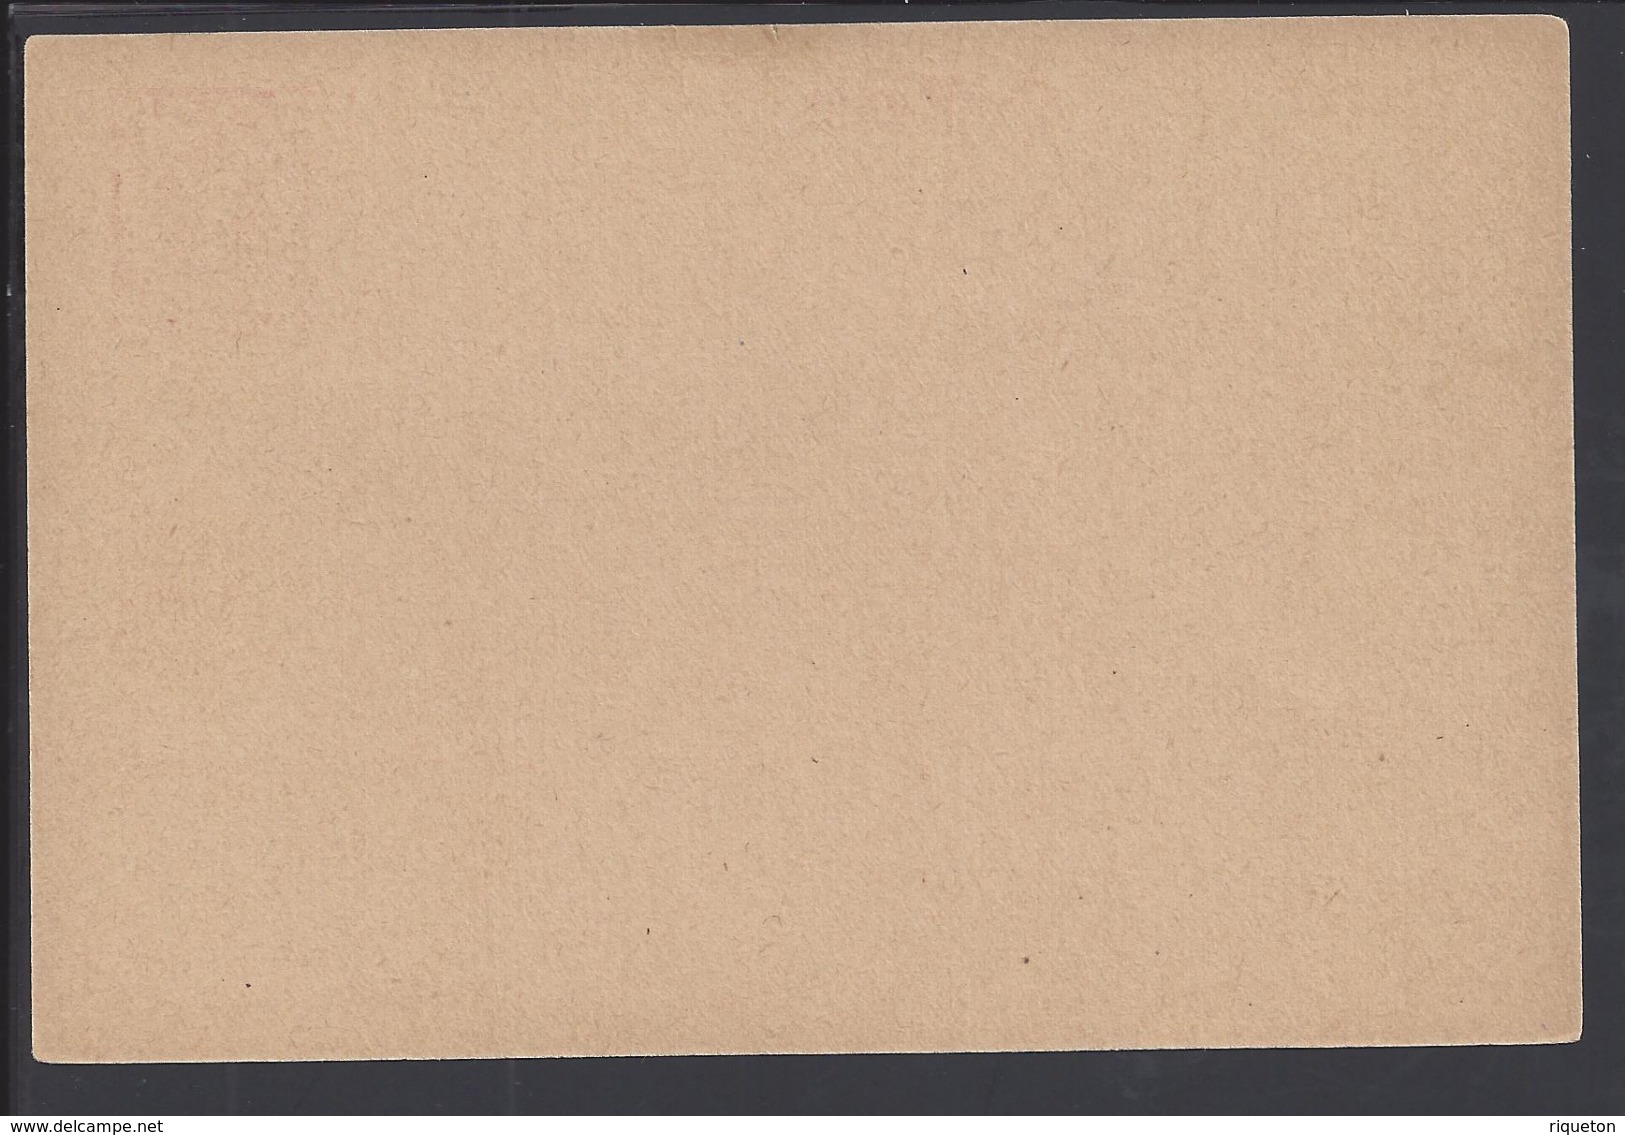 DANTZIG - 1922 - Carte Entier Postal Neuve 80 P Surchargé 3 M - B/TB - - Enteros Postales